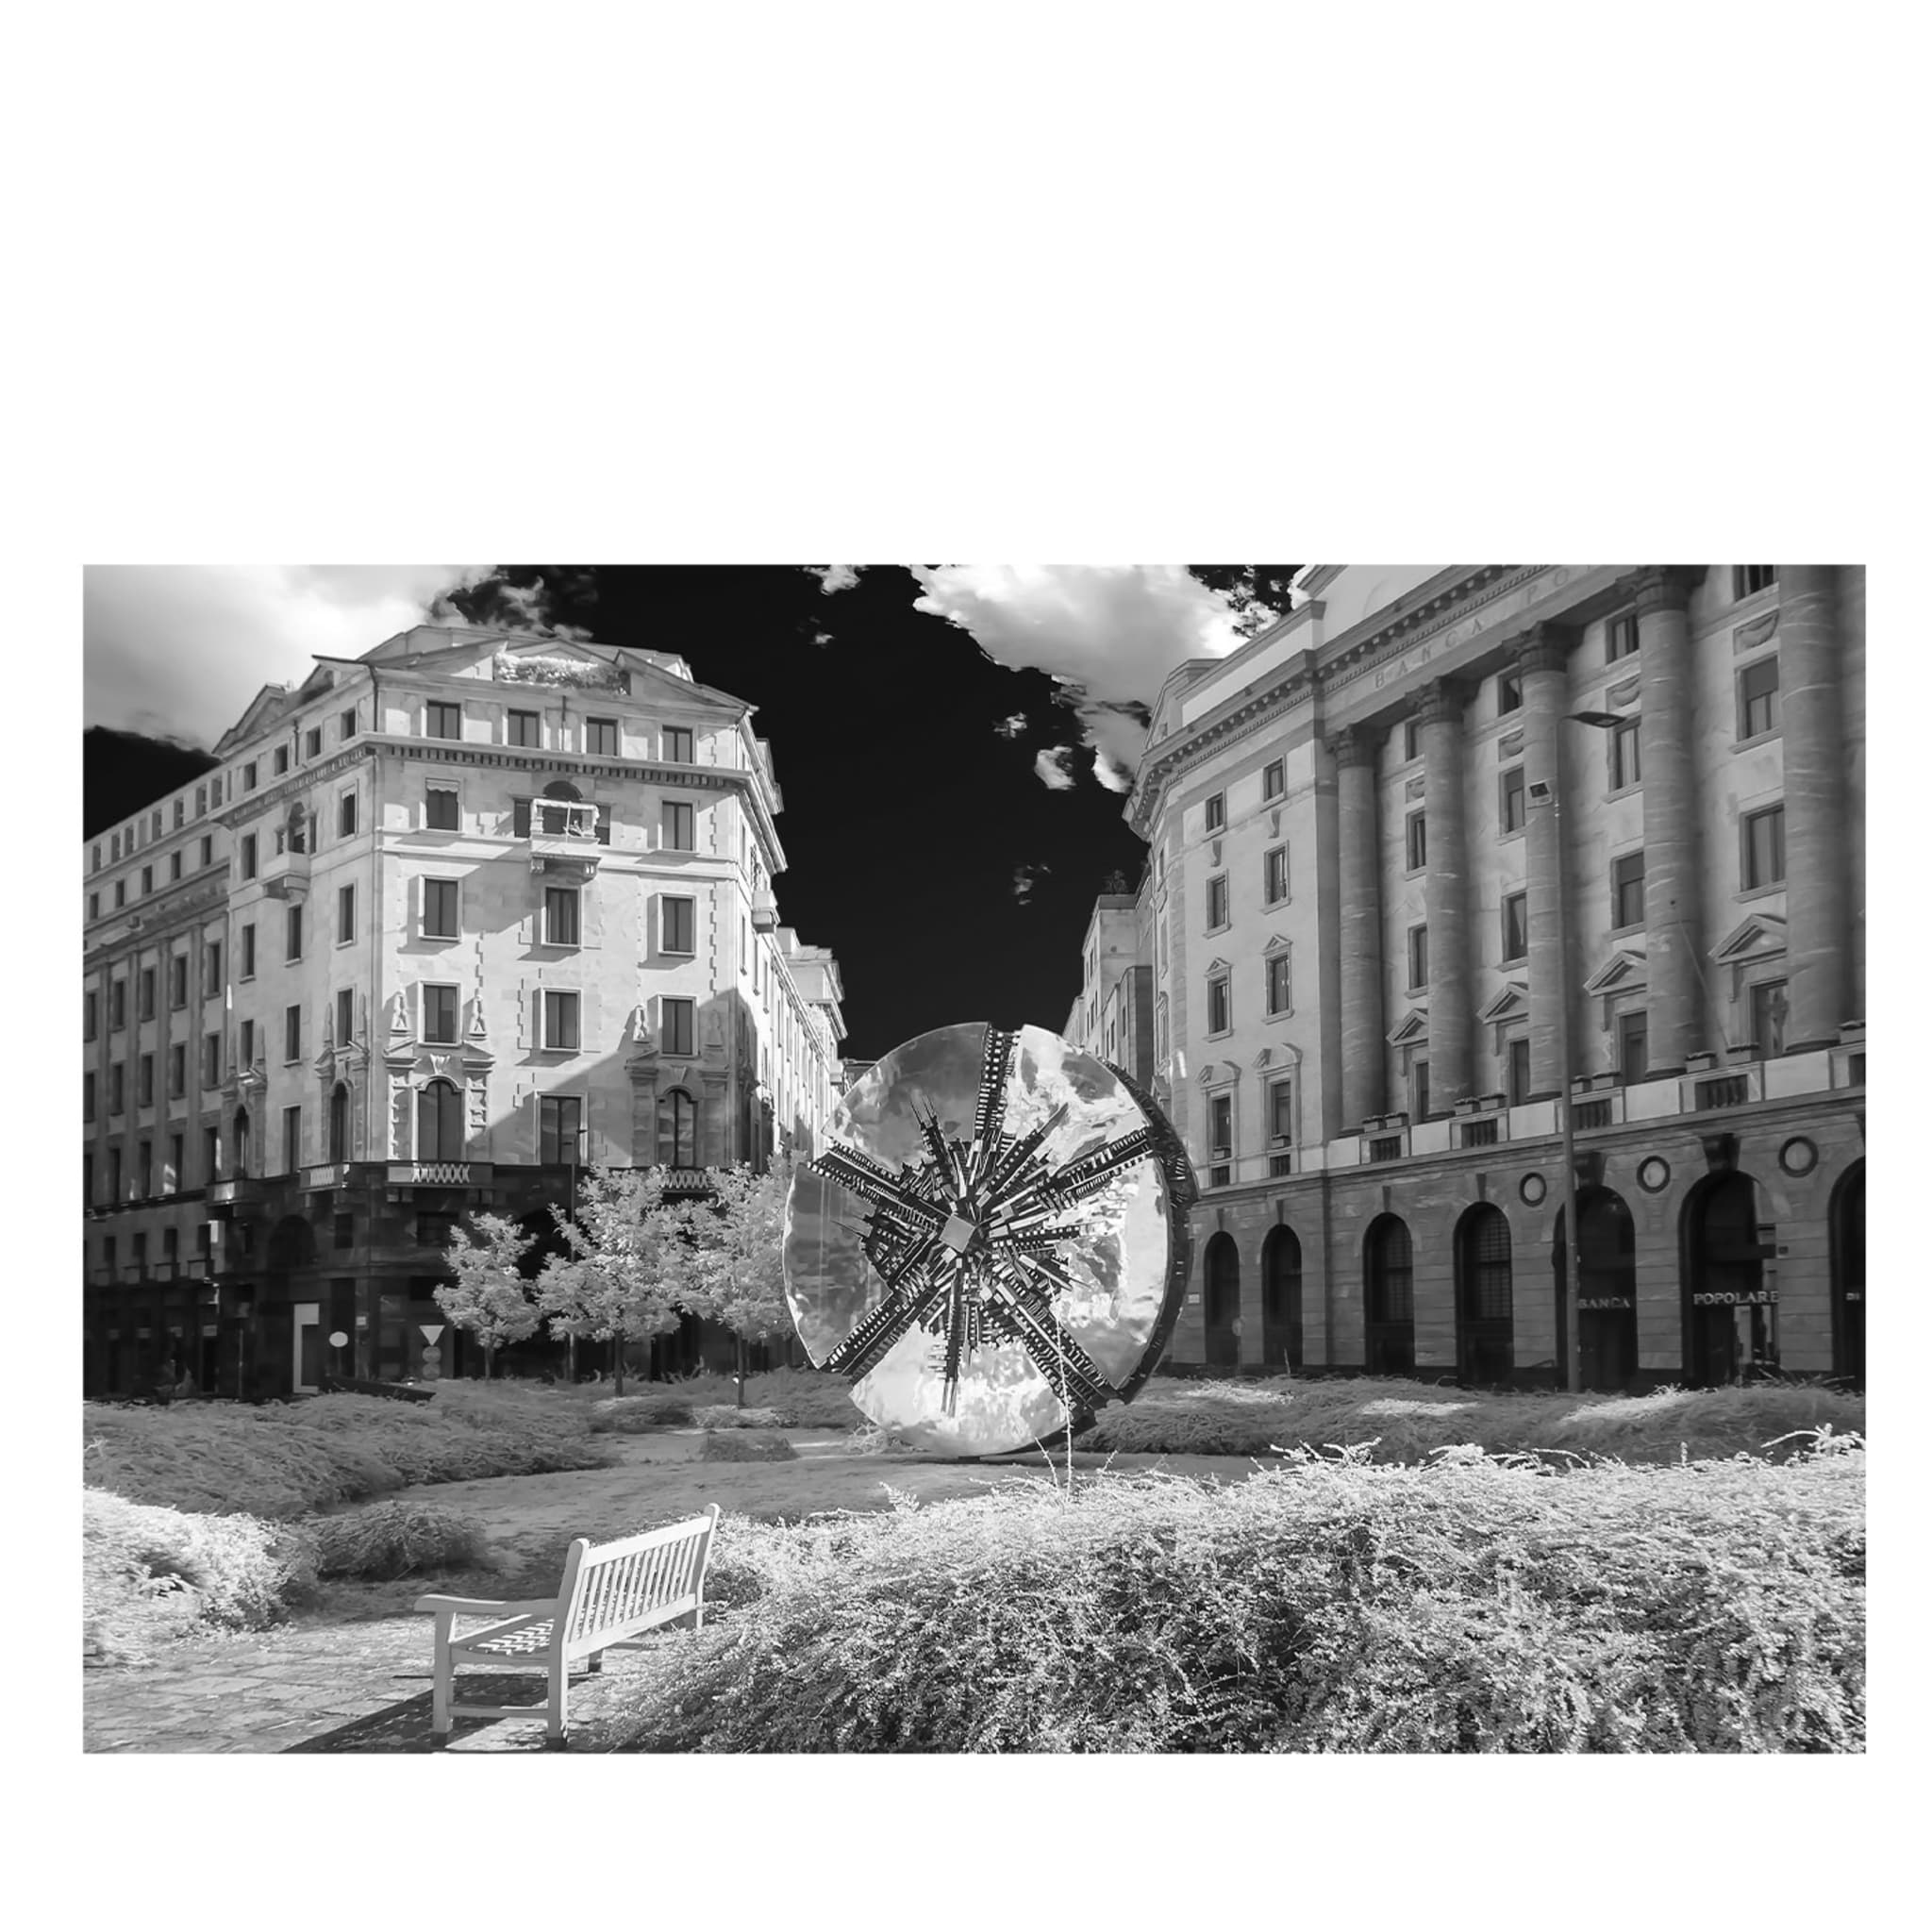 Piazza Meda Photograph - Main view